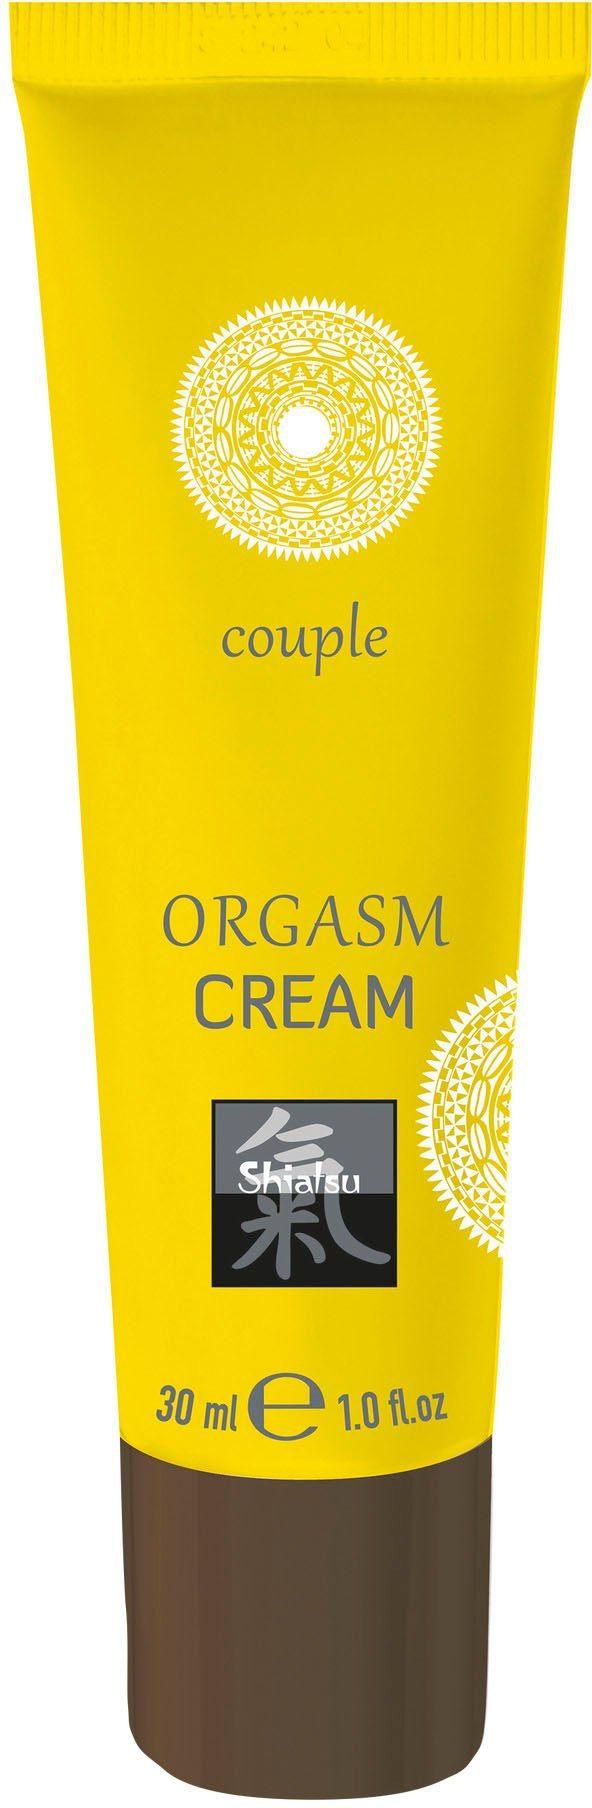 Shiatsu Cream Orgasm Intimcreme,